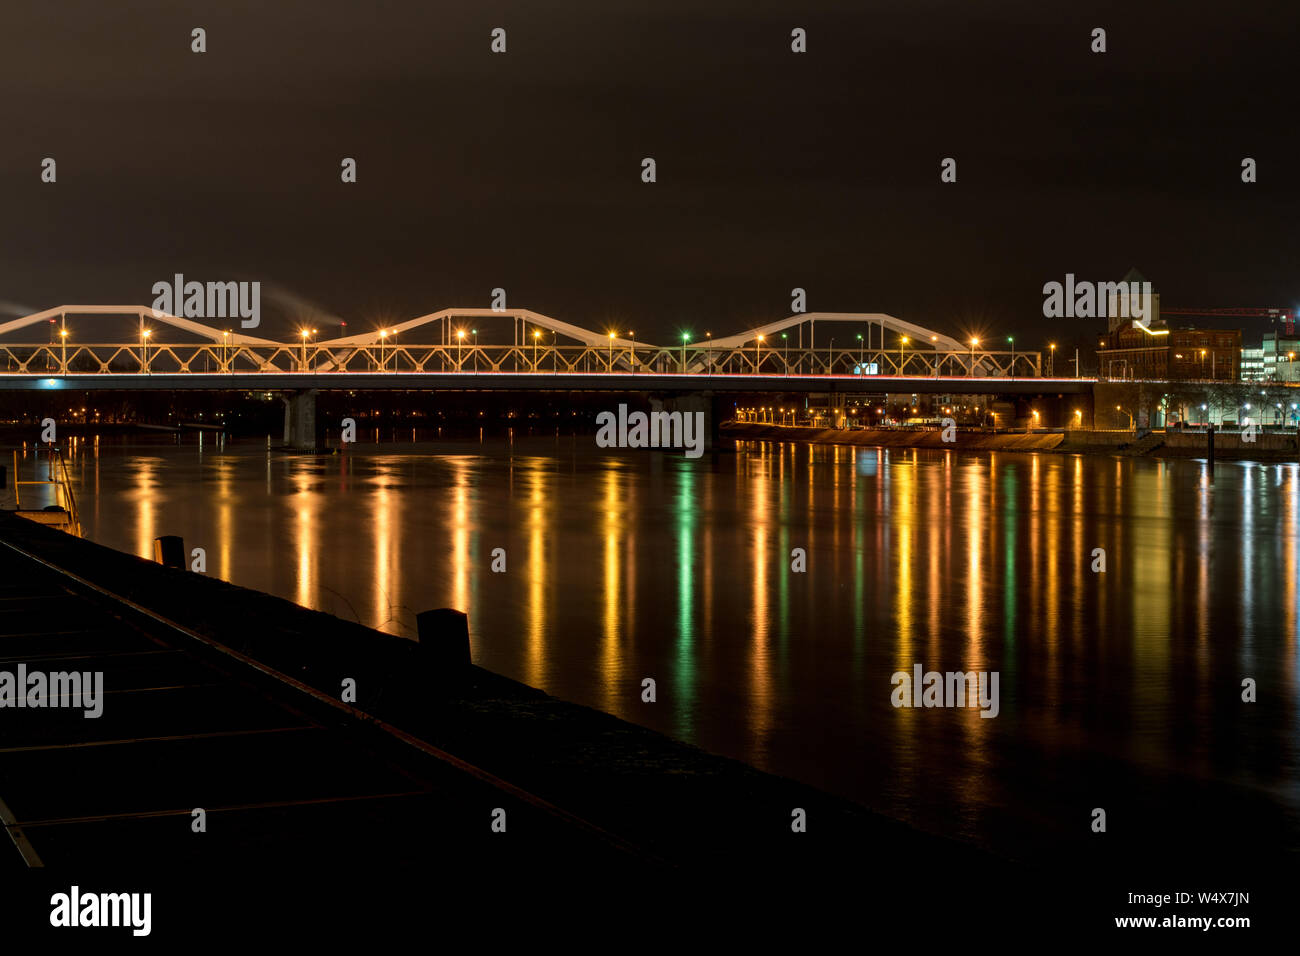 Konrad-Adenauer-Brücke in Mannheim bei Nacht, Konrad-Adenauer Bridge in Mannheim at night Stock Photo